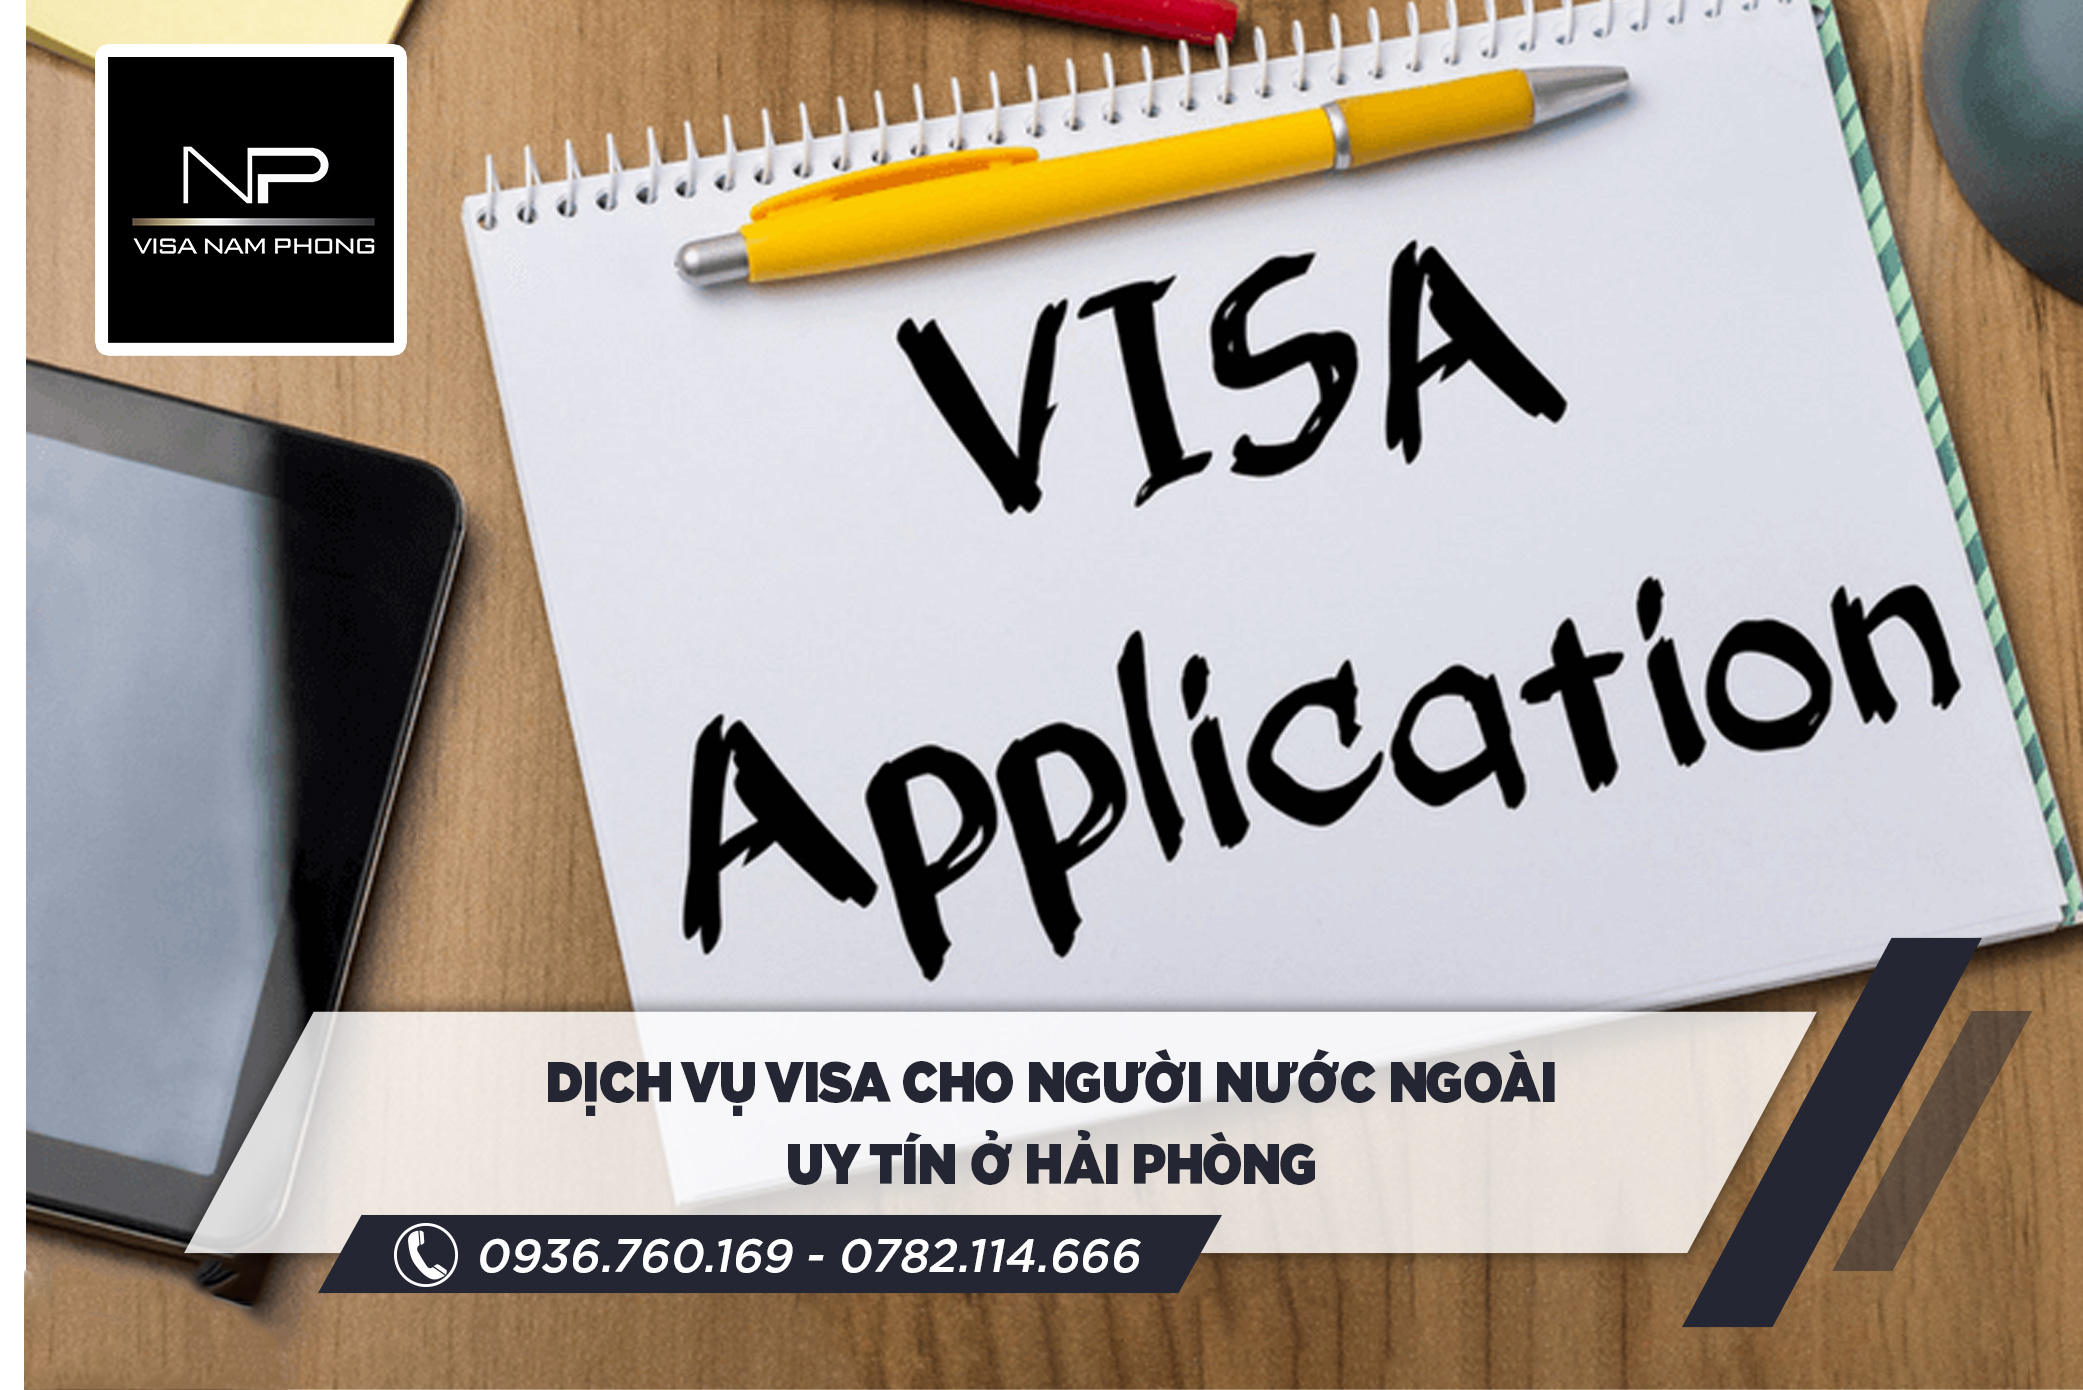 dịch vụ visa cho người nước ngoài nhanh ở hải phòng